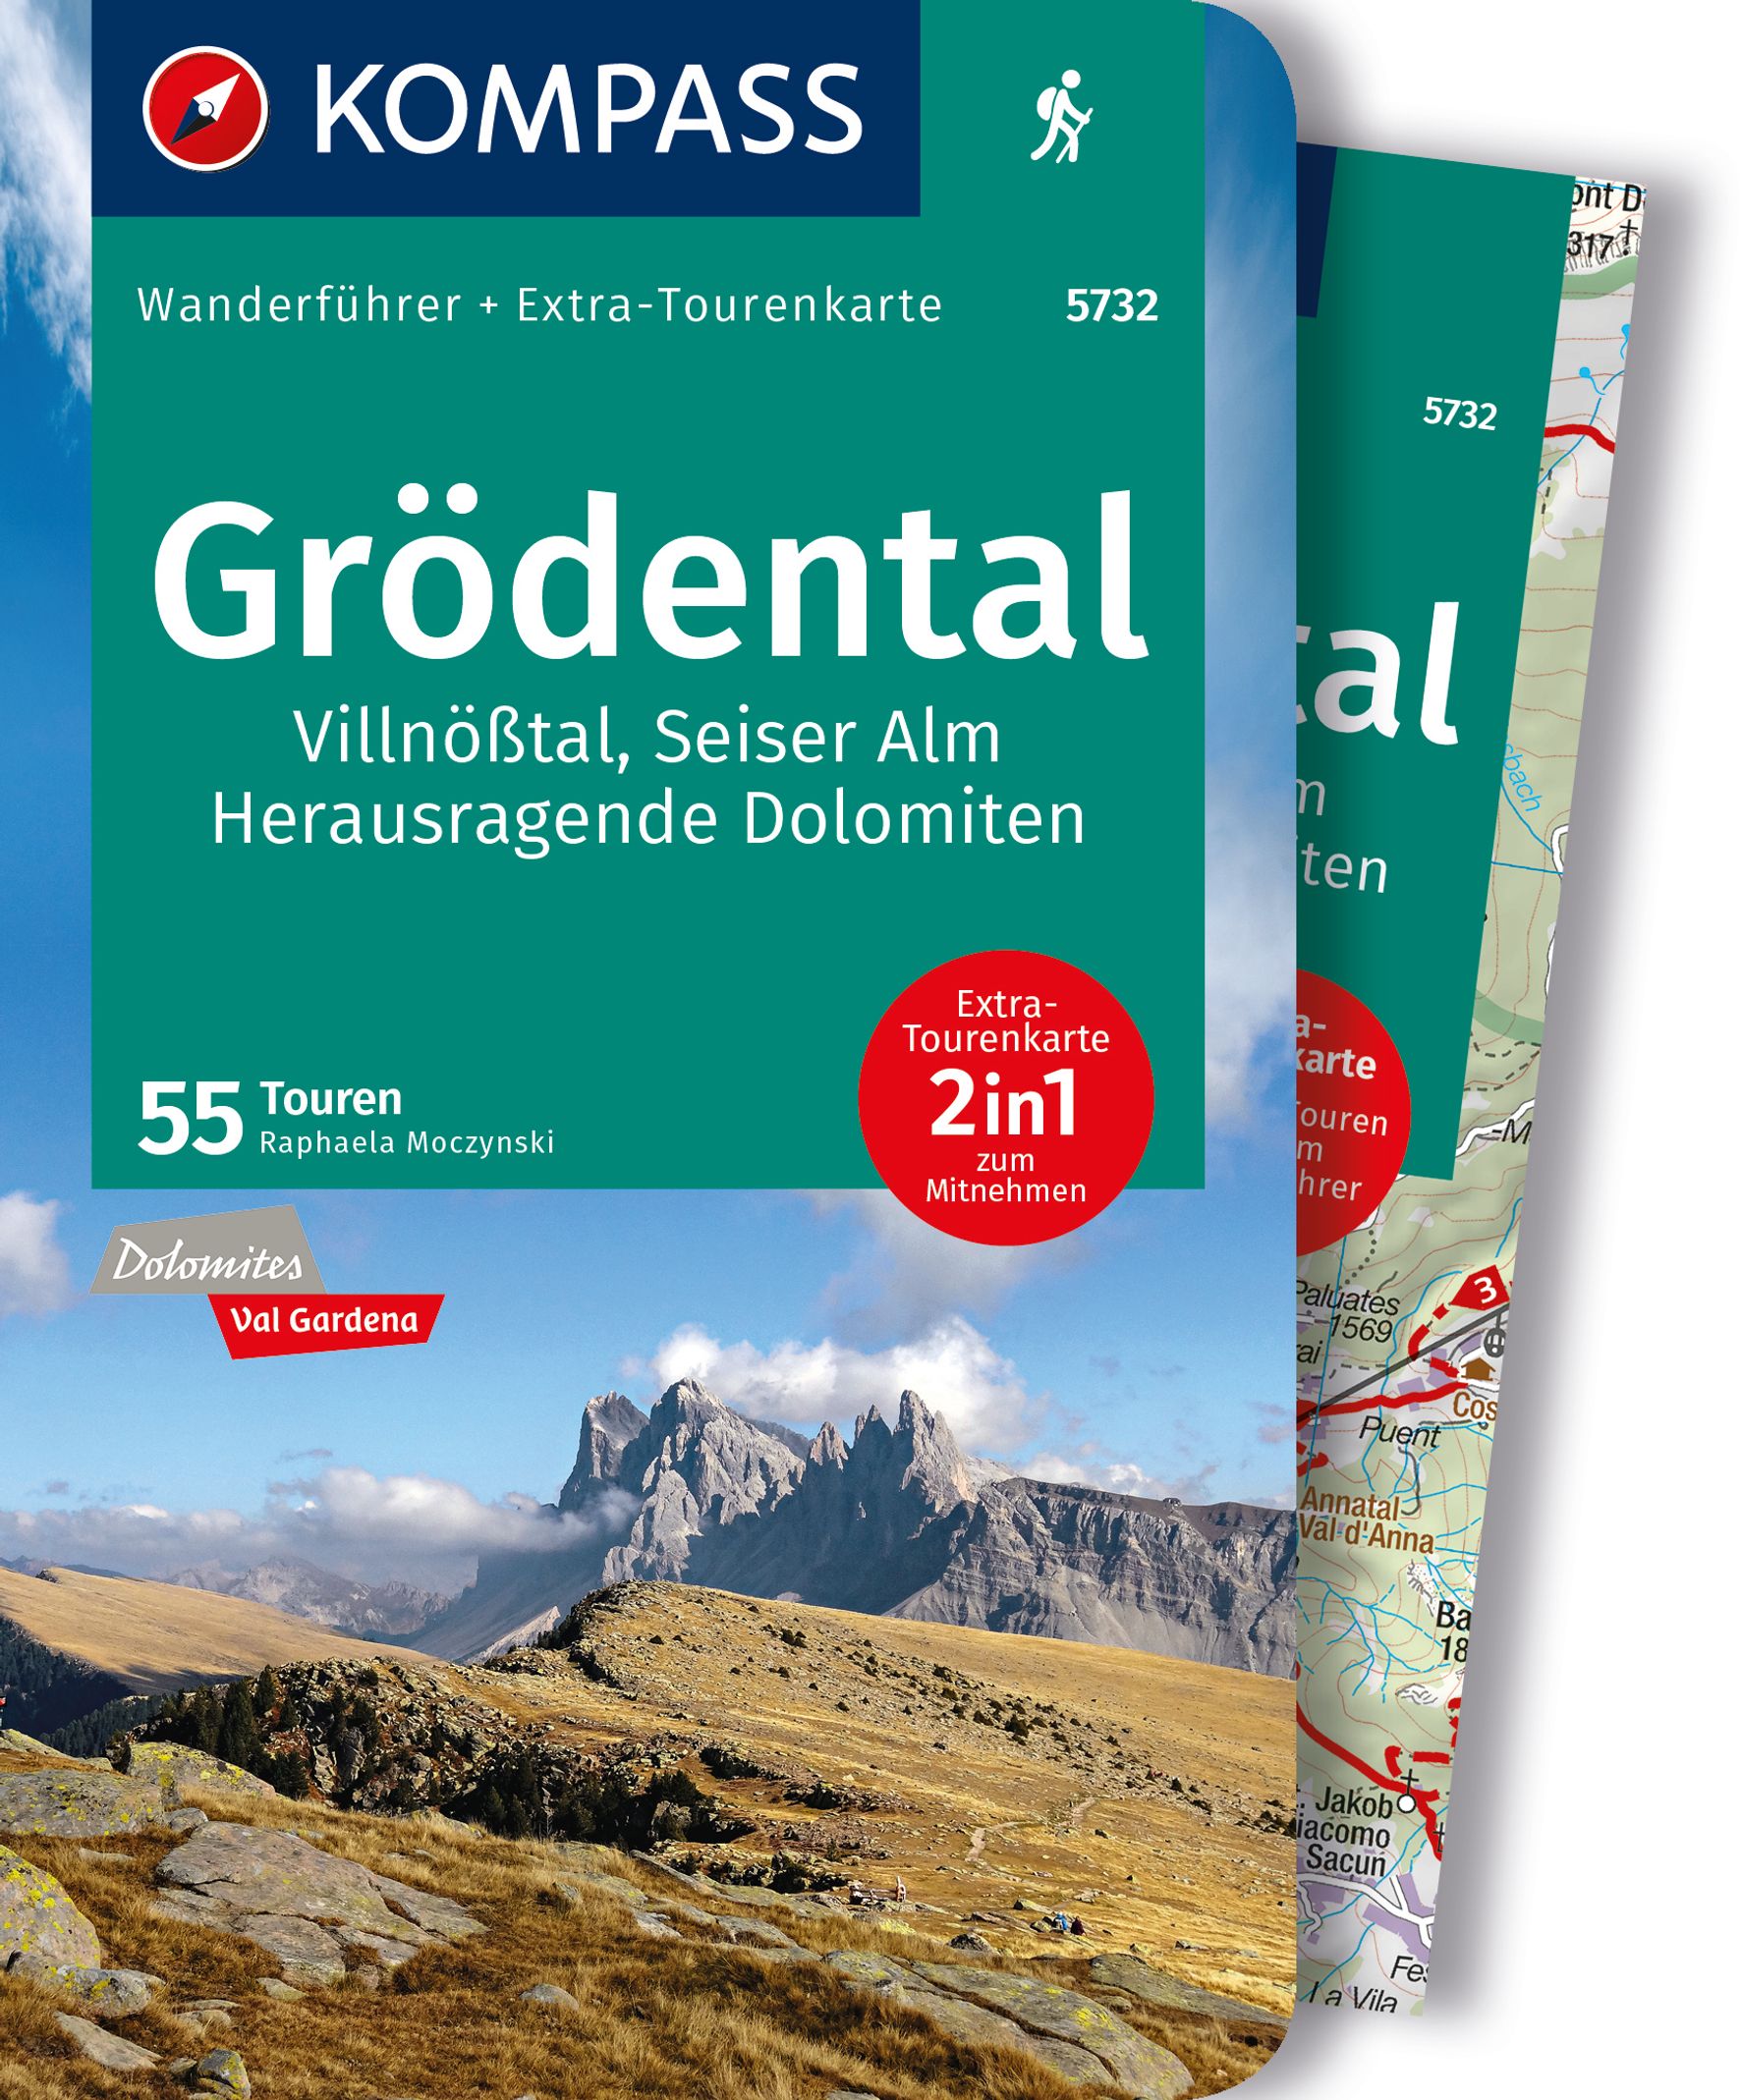 MAIRDUMONT Grödental, Villnößtal, Seiser Alm, Herausragende Dolomiten, 55 Touren mit Extra-Tourenkarte